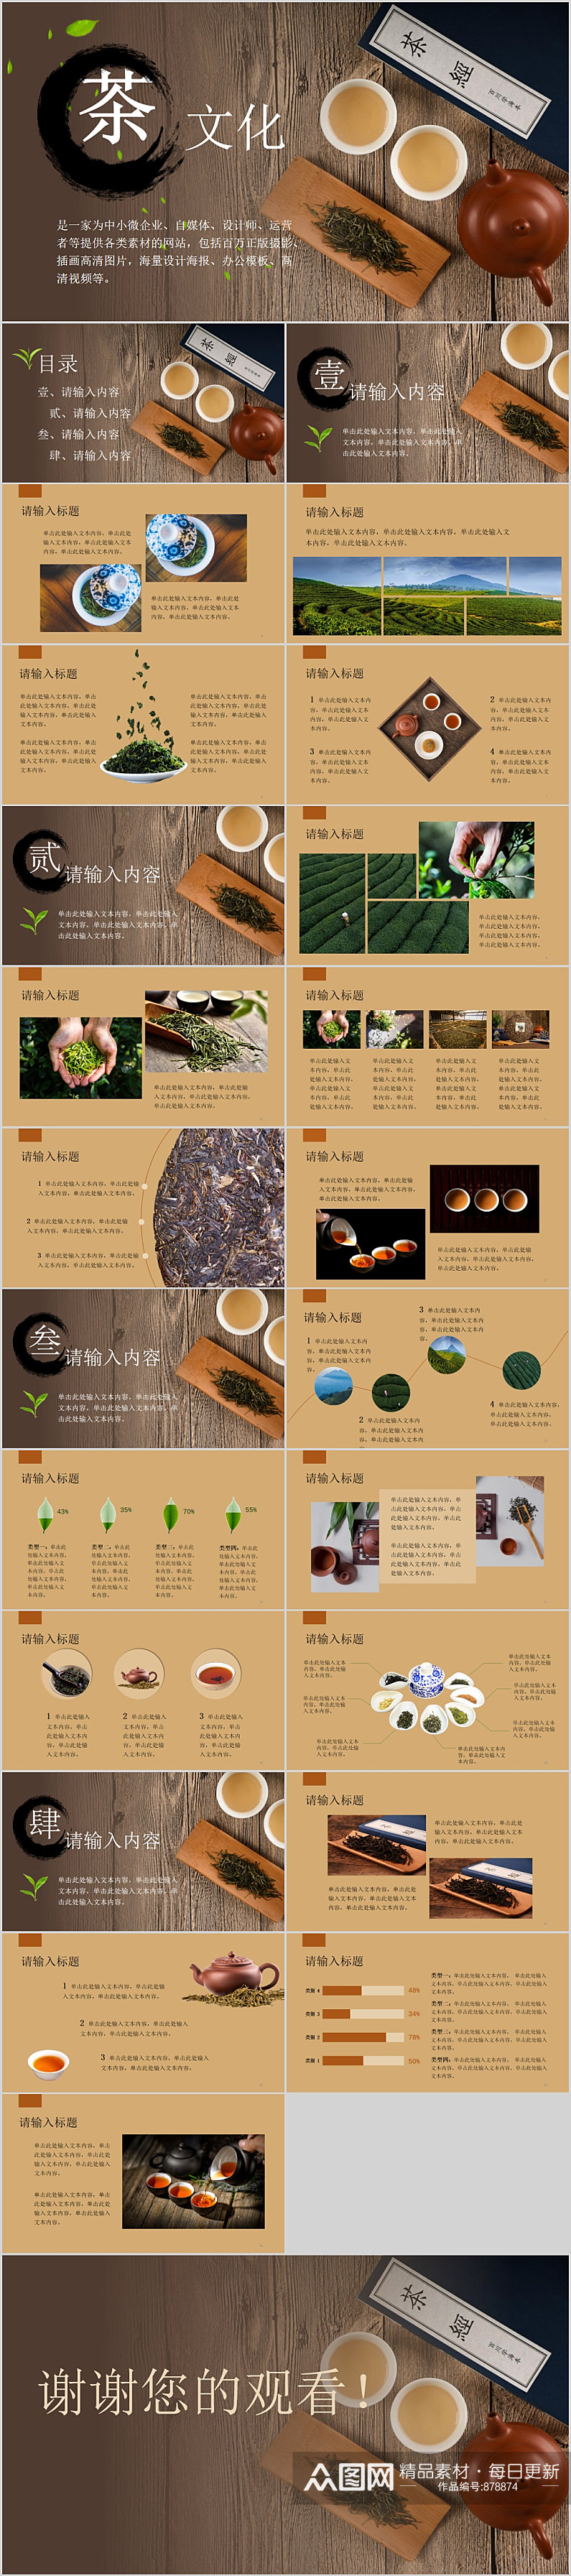 中式简约茶文化介绍PPT模板素材